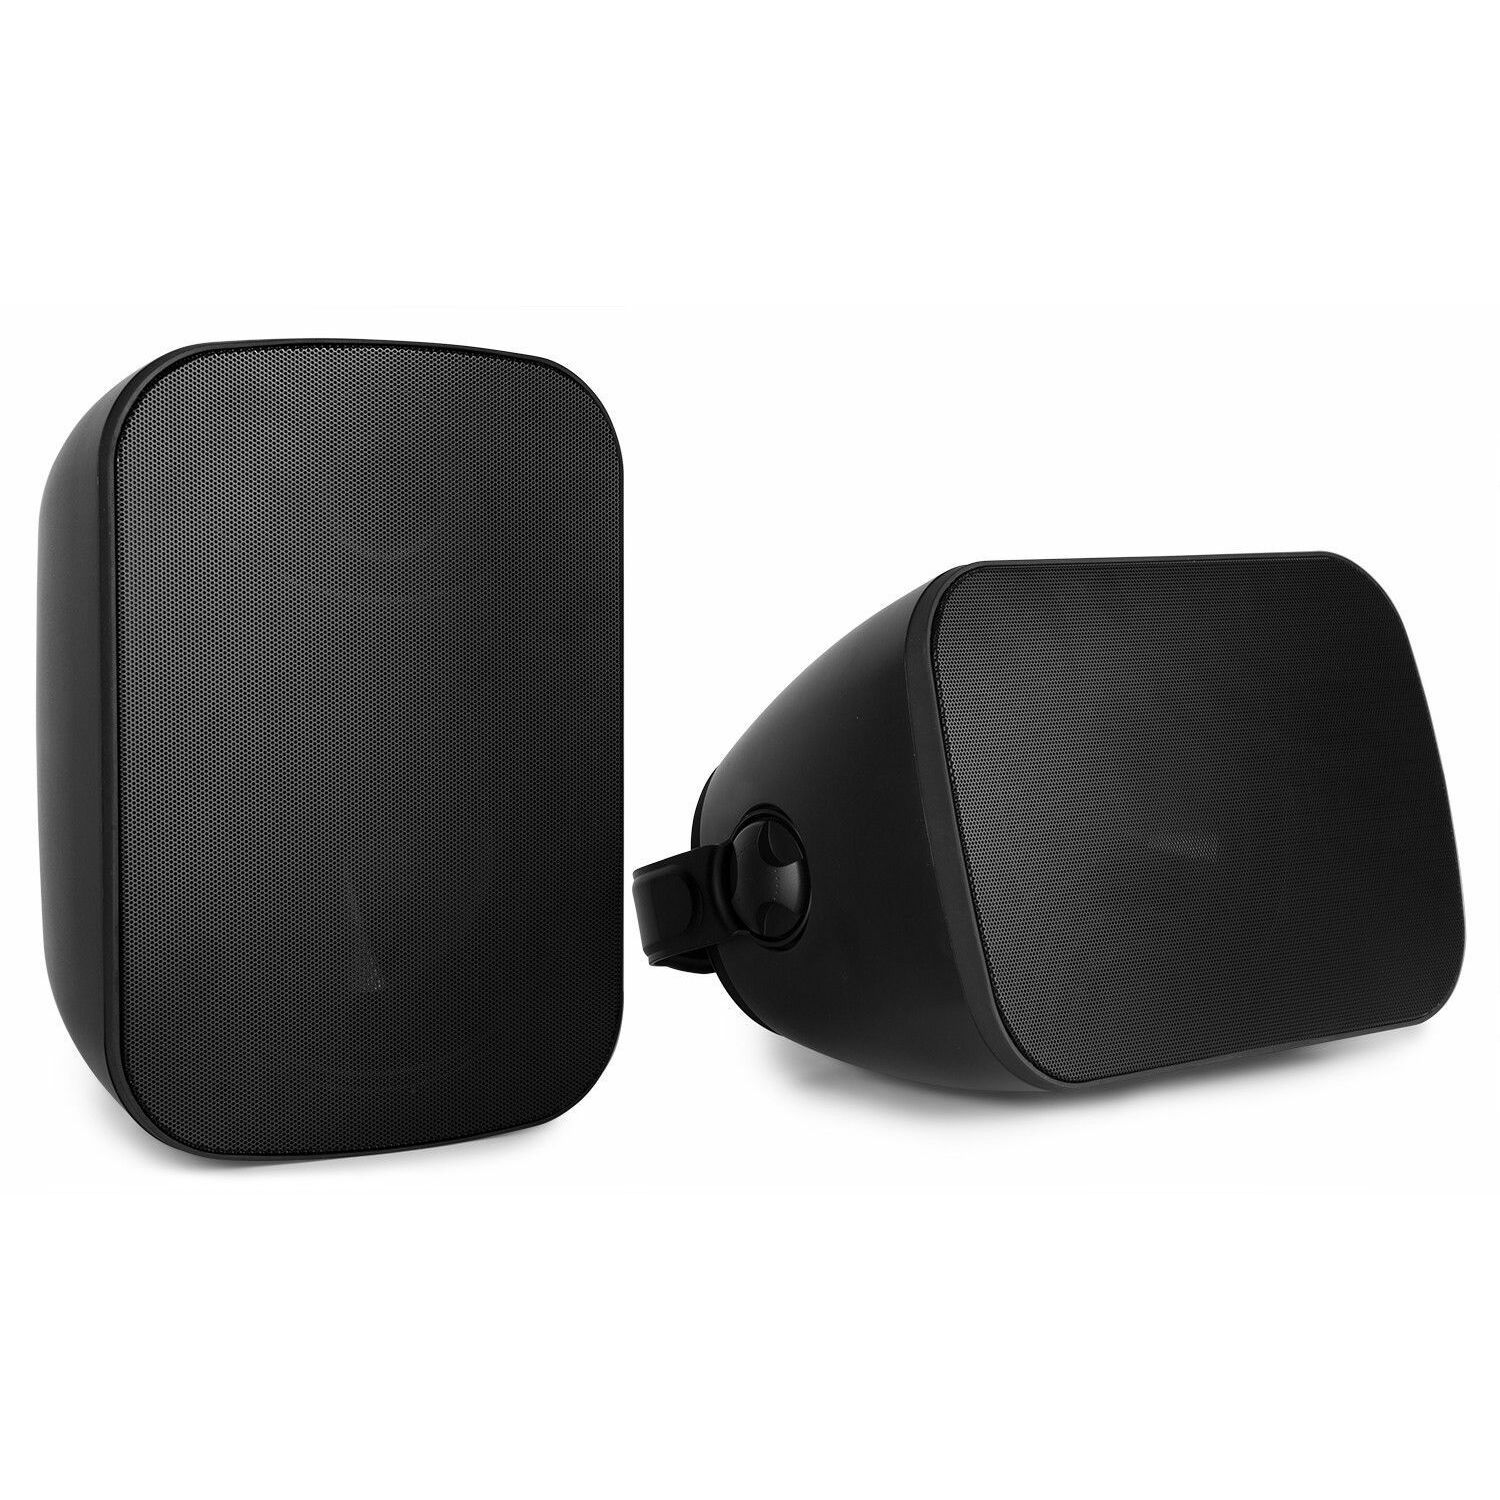 Retourdeal - Power Dynamics BD65B in/outdoor speakerset 150W - Zwart